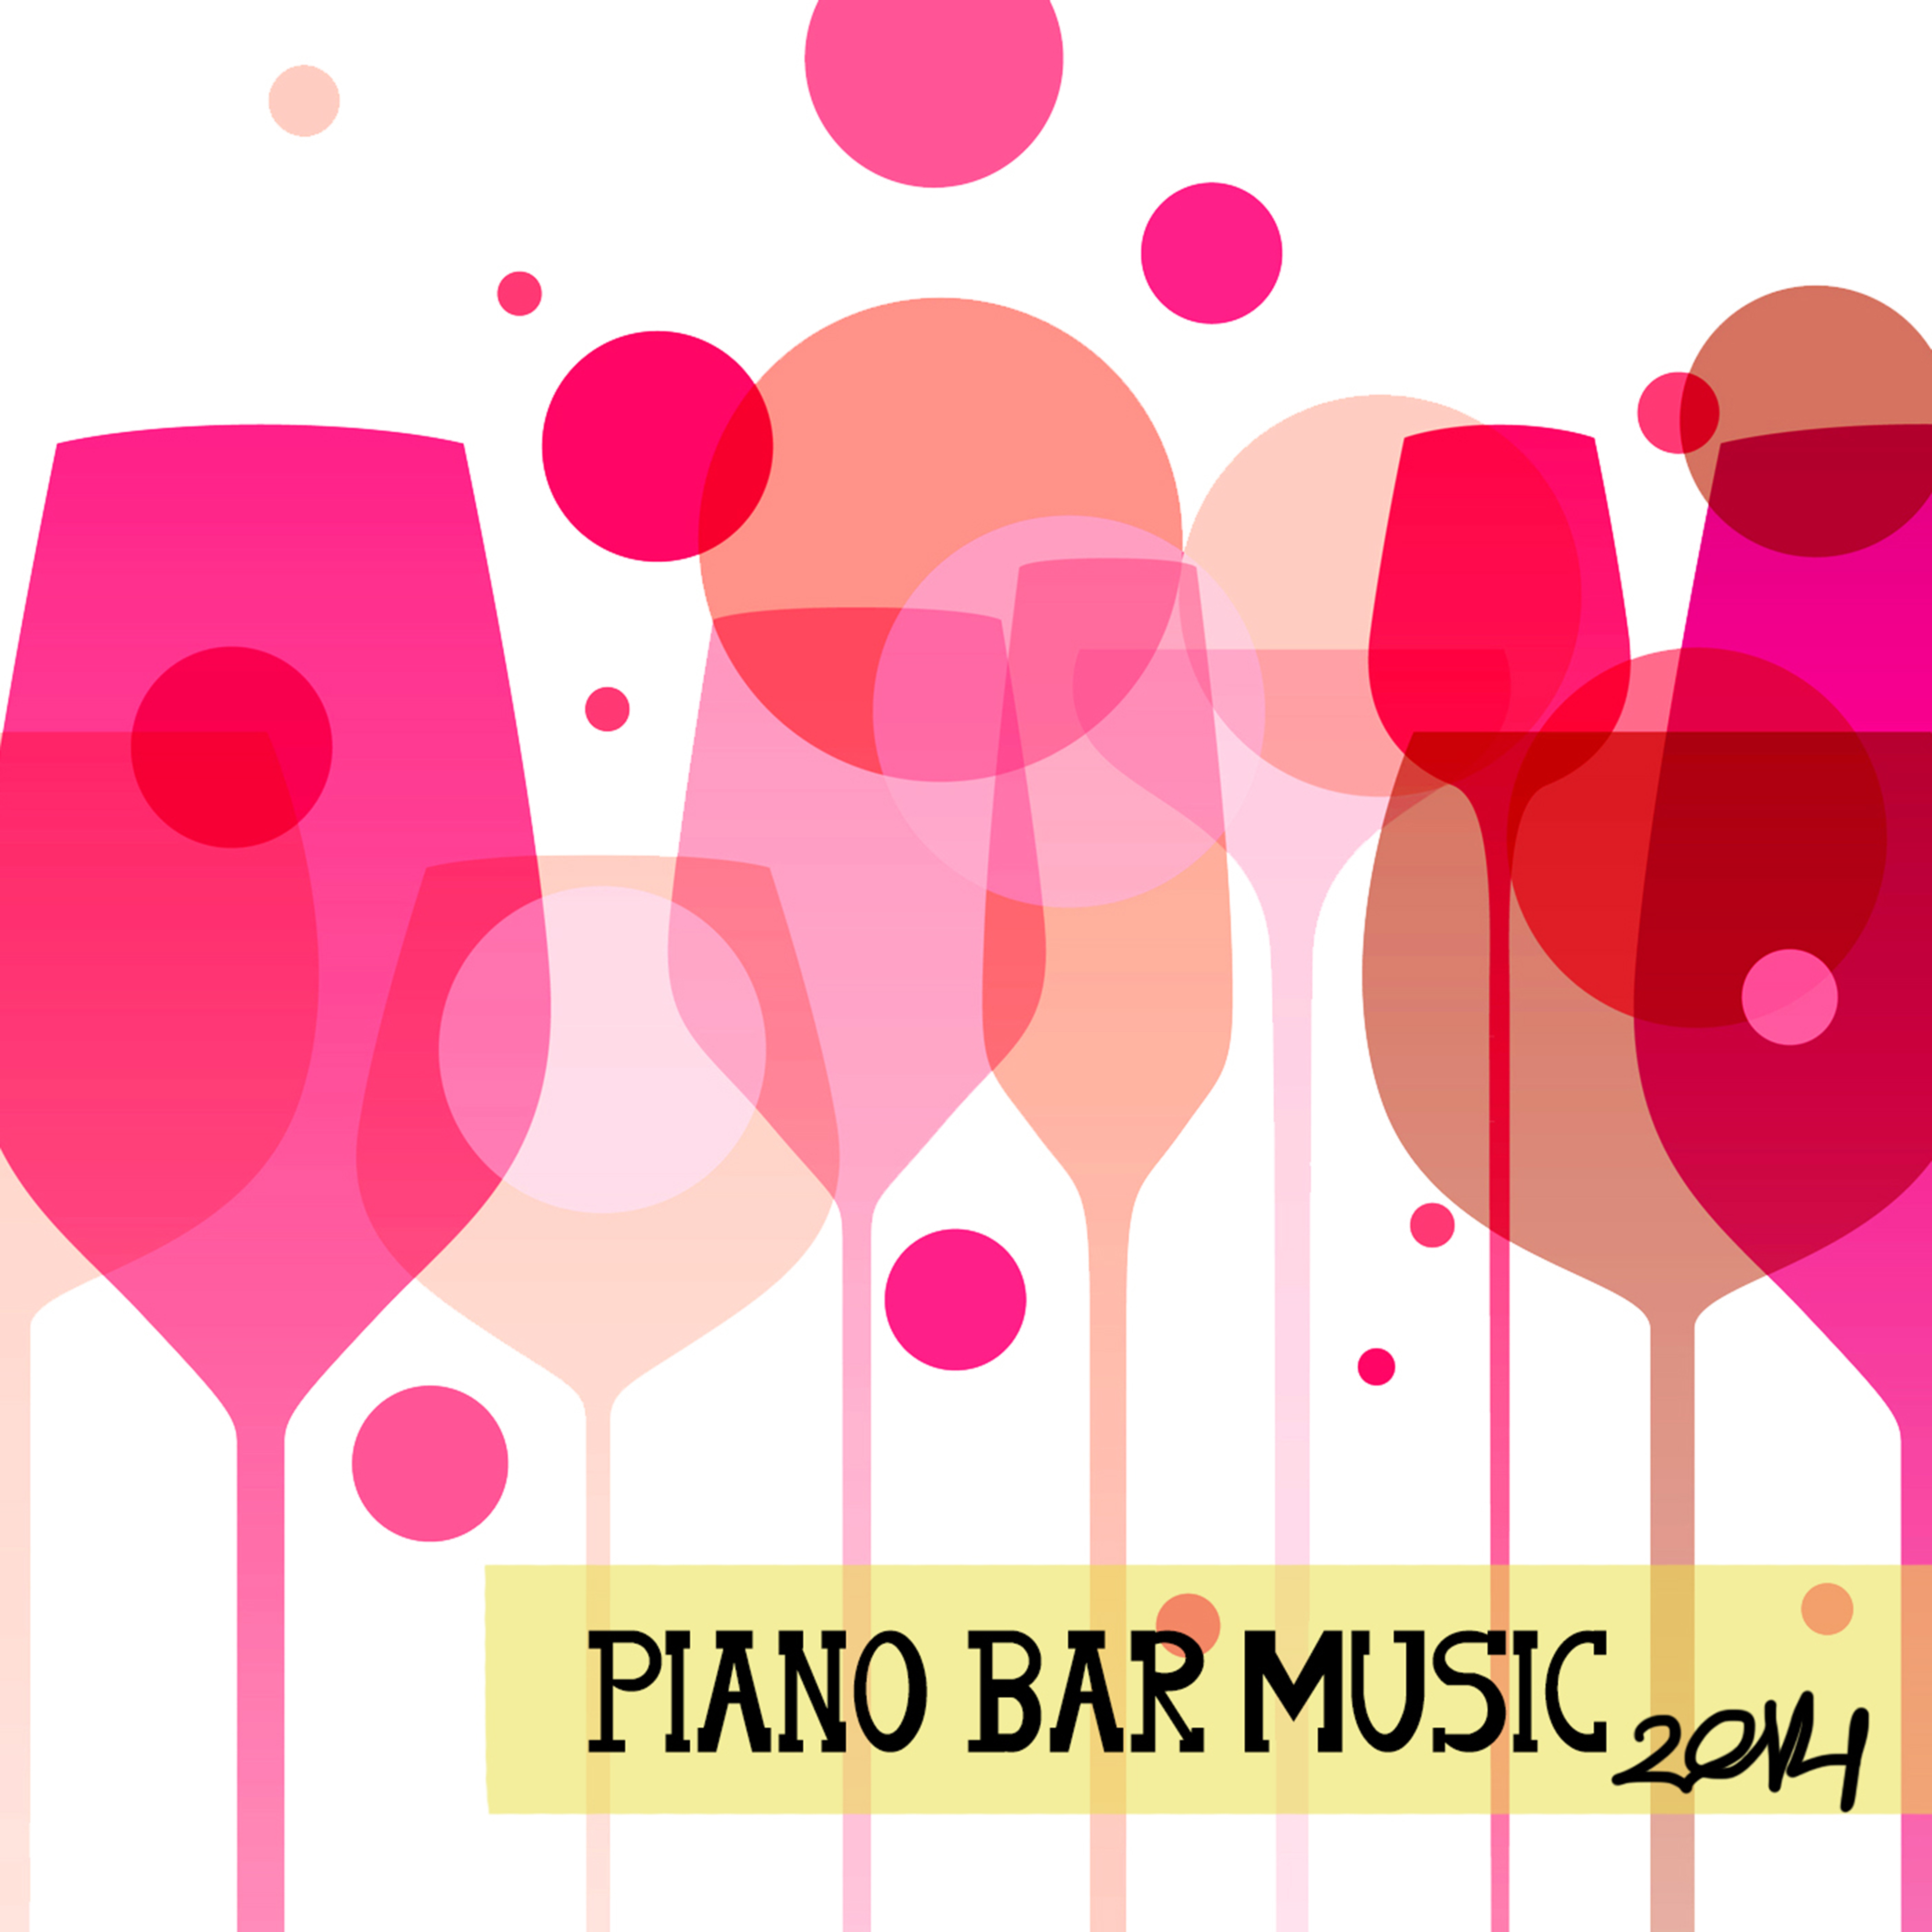 Piano Bar Music 2014